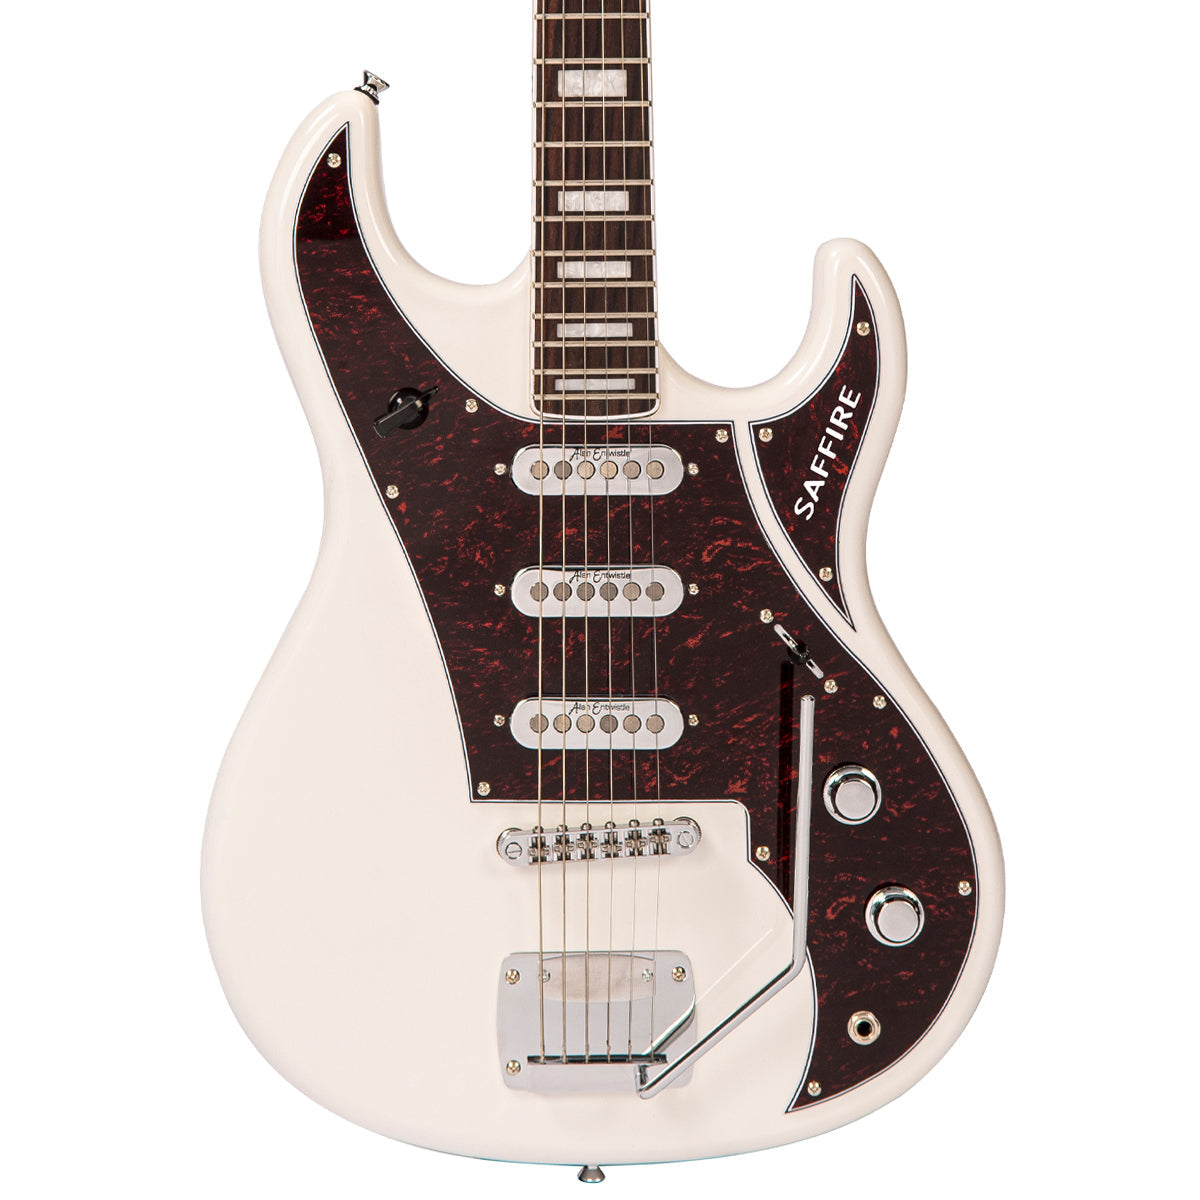 Rapier Saffire Electric Guitar ~ Vintage White, Electric Guitar for sale at Richards Guitars.